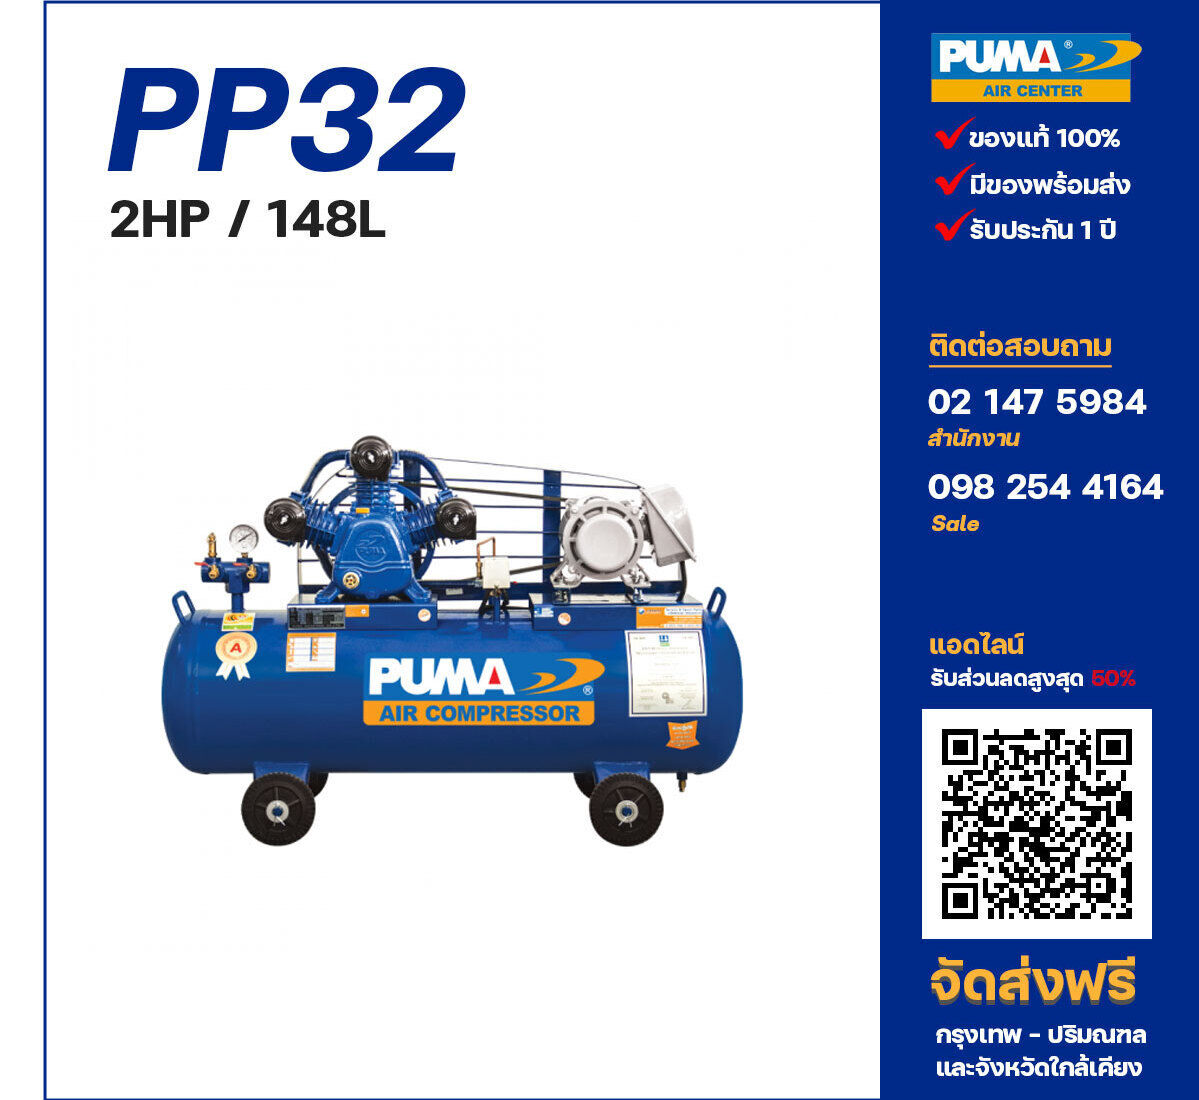 ปั๊มลมพูม่า PUMA PP32-PPM220V ปั๊มลมลูกสูบ ขนาด 3 สูบ 2 แรงม้า 148 ลิตร PUMA พร้อมมอเตอร์ PUMA ไฟ 220V ส่งฟรี กรุงเทพฯ-ปริมณฑล รับประกัน 1 ปี